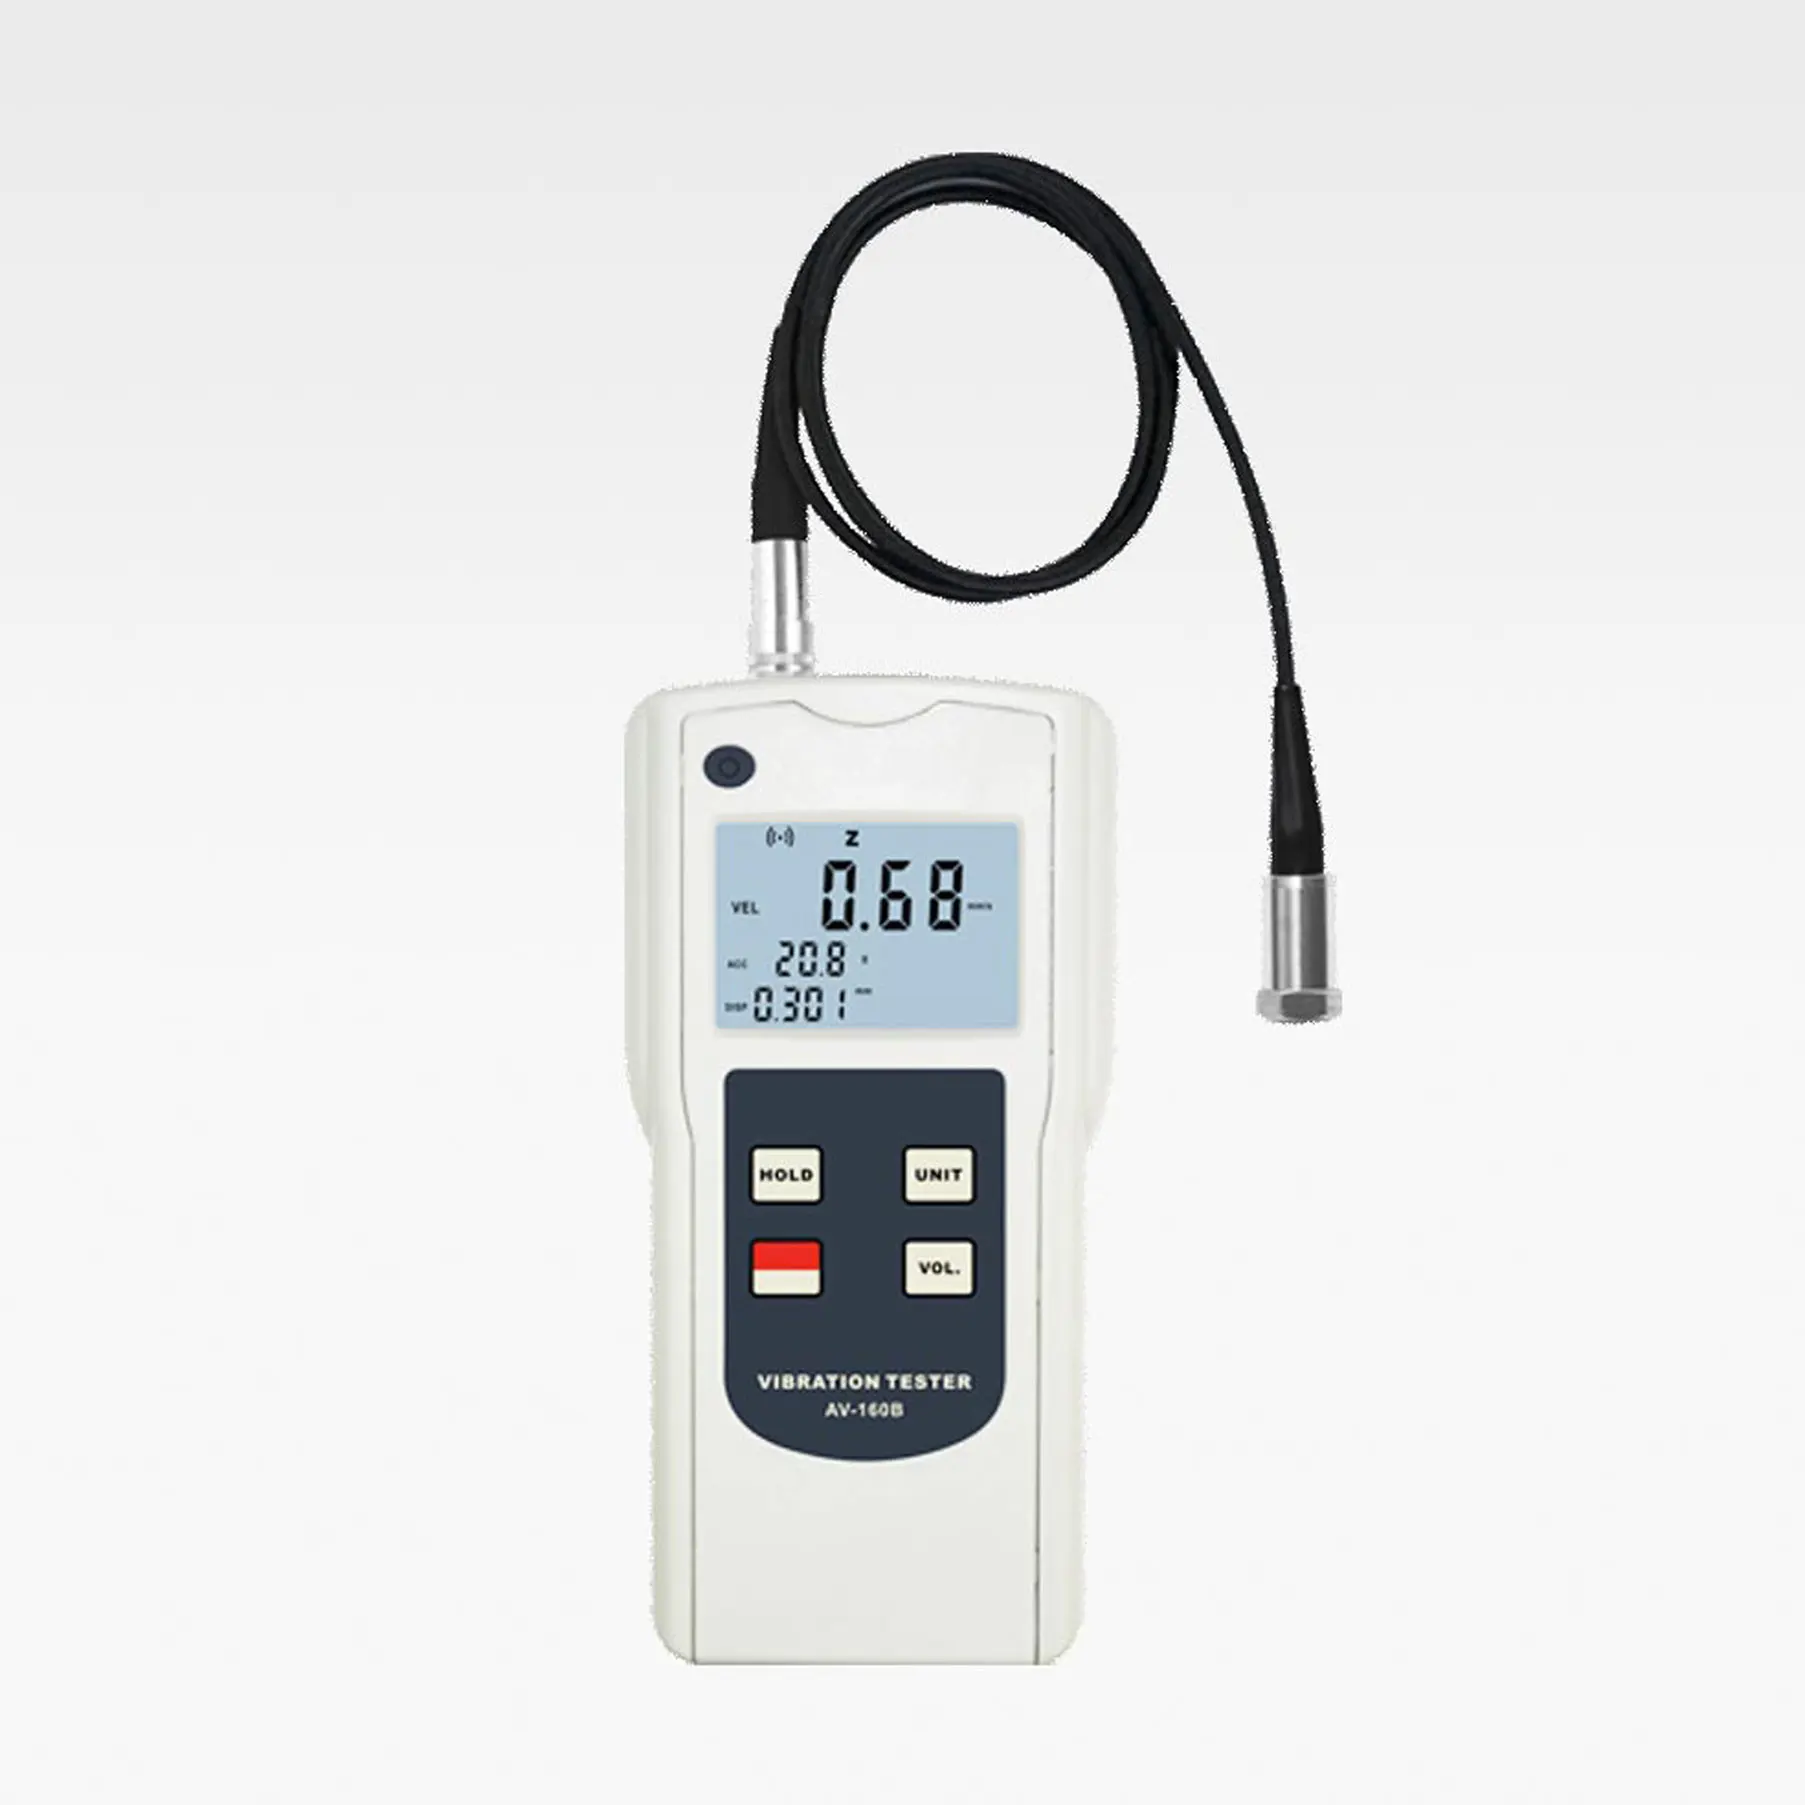 Details about   AV-160B Digital Vibration Tester Meter Gauge Accelerometer Vibrometer 